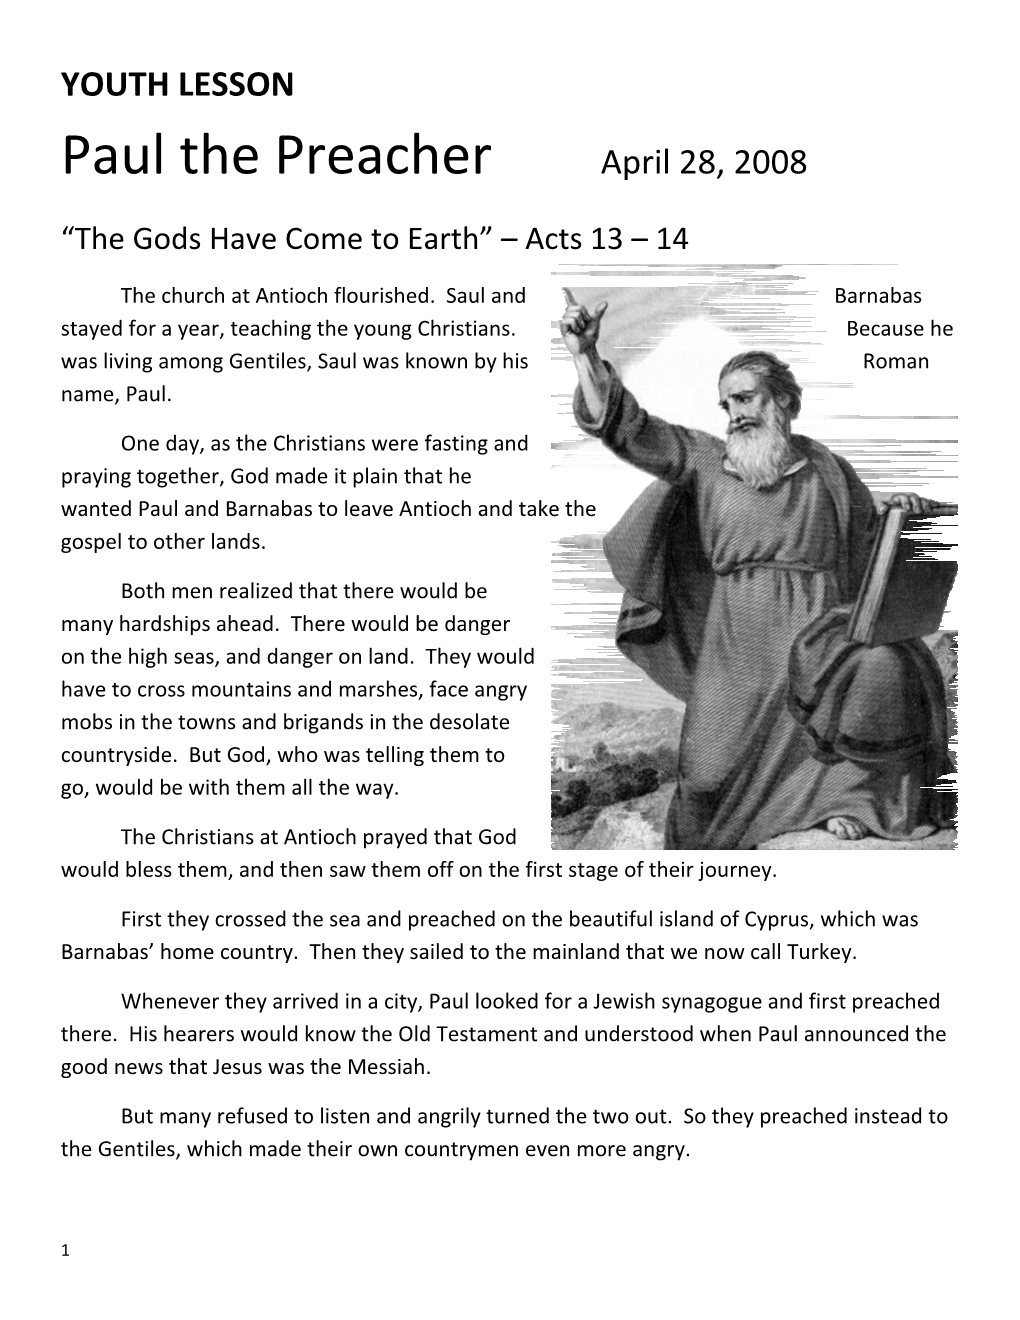 YOUTH LESSON Paul the Preacherapril 28, 2008